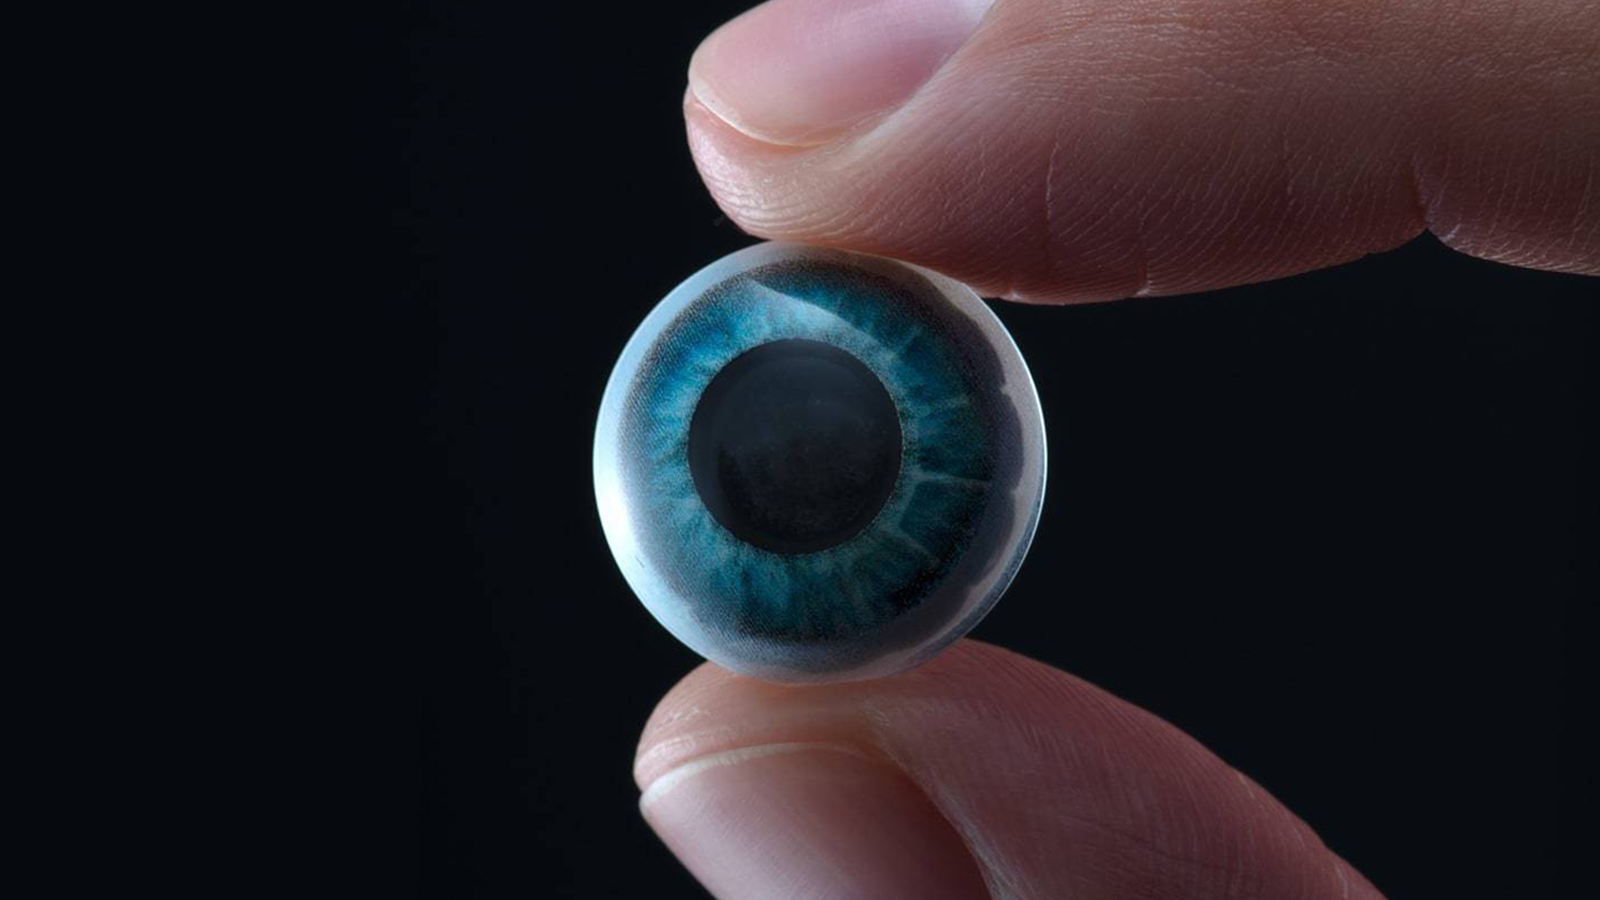 Mojo Vision Smart Contact Lens